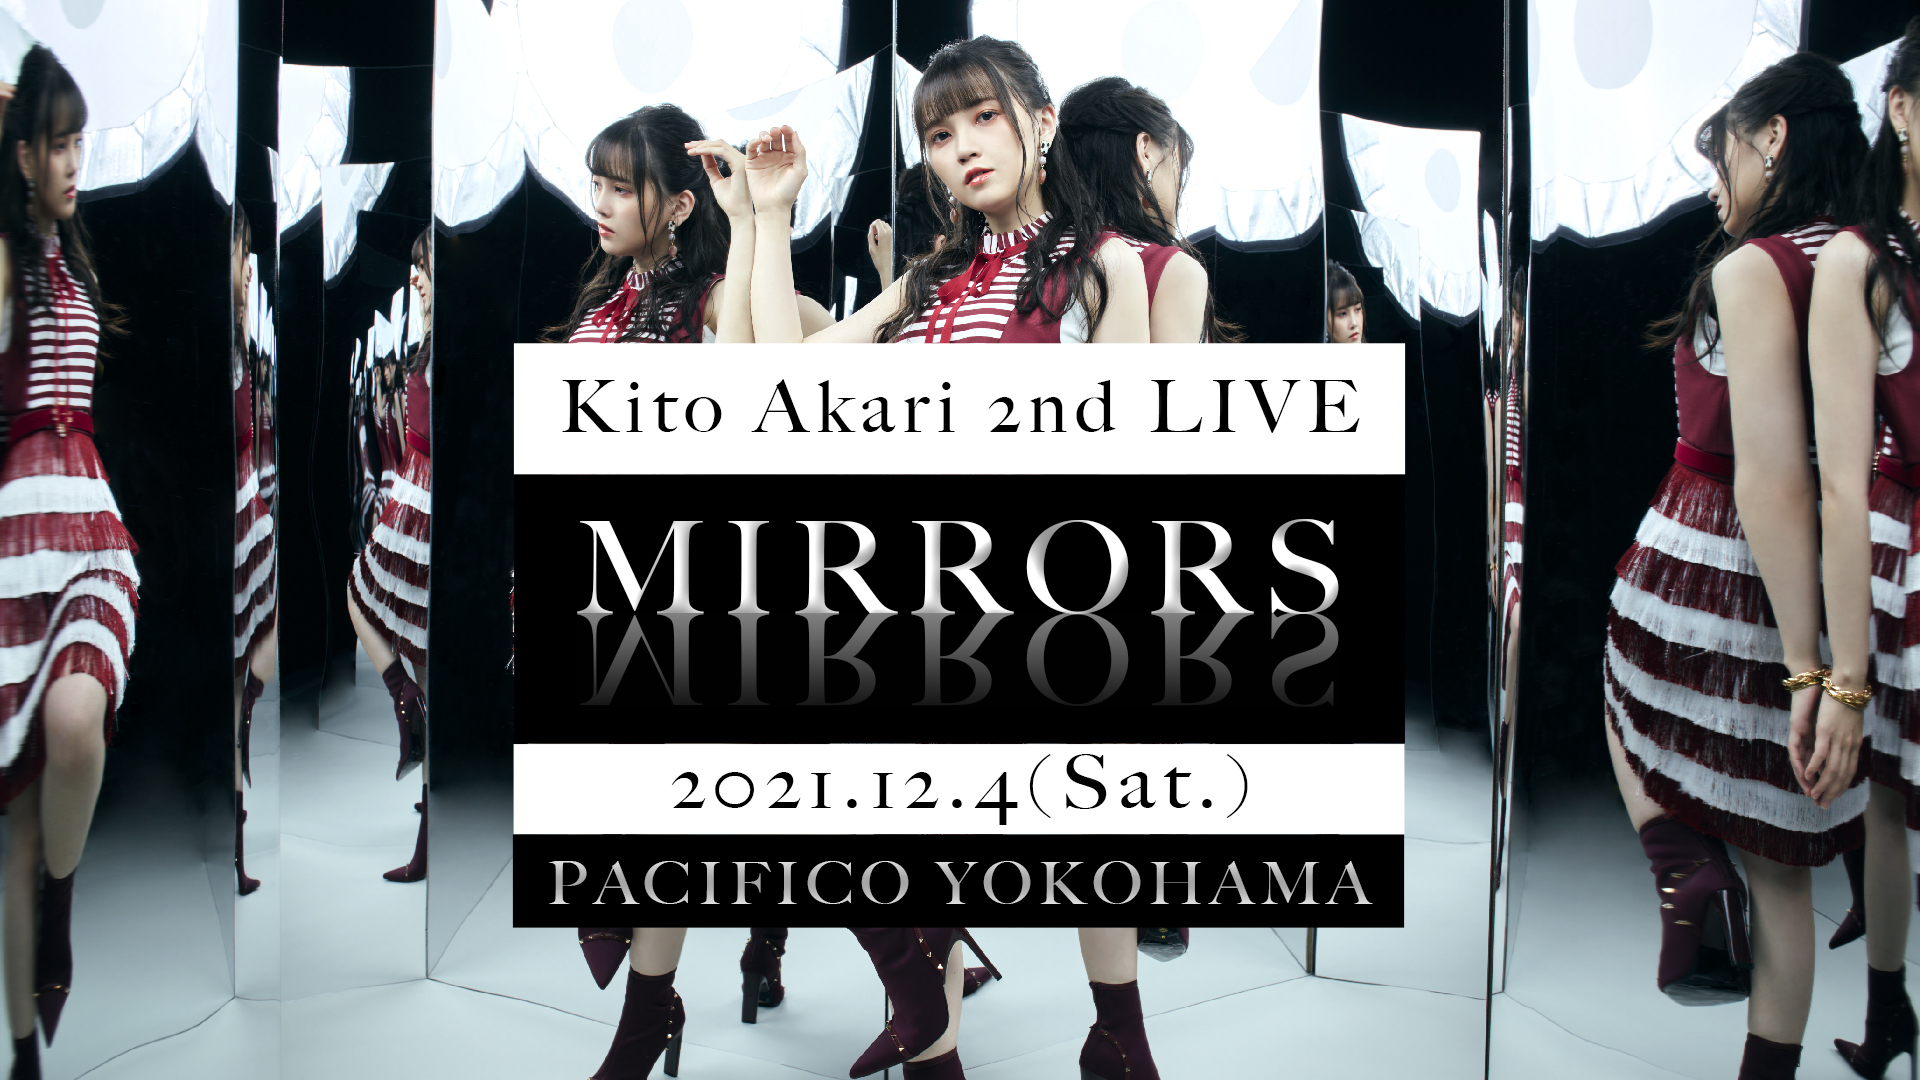 鬼頭明里 2nd Live Mirrors ｅ プレオーダー 一般販売決定 鬼頭明里オフィシャルサイト